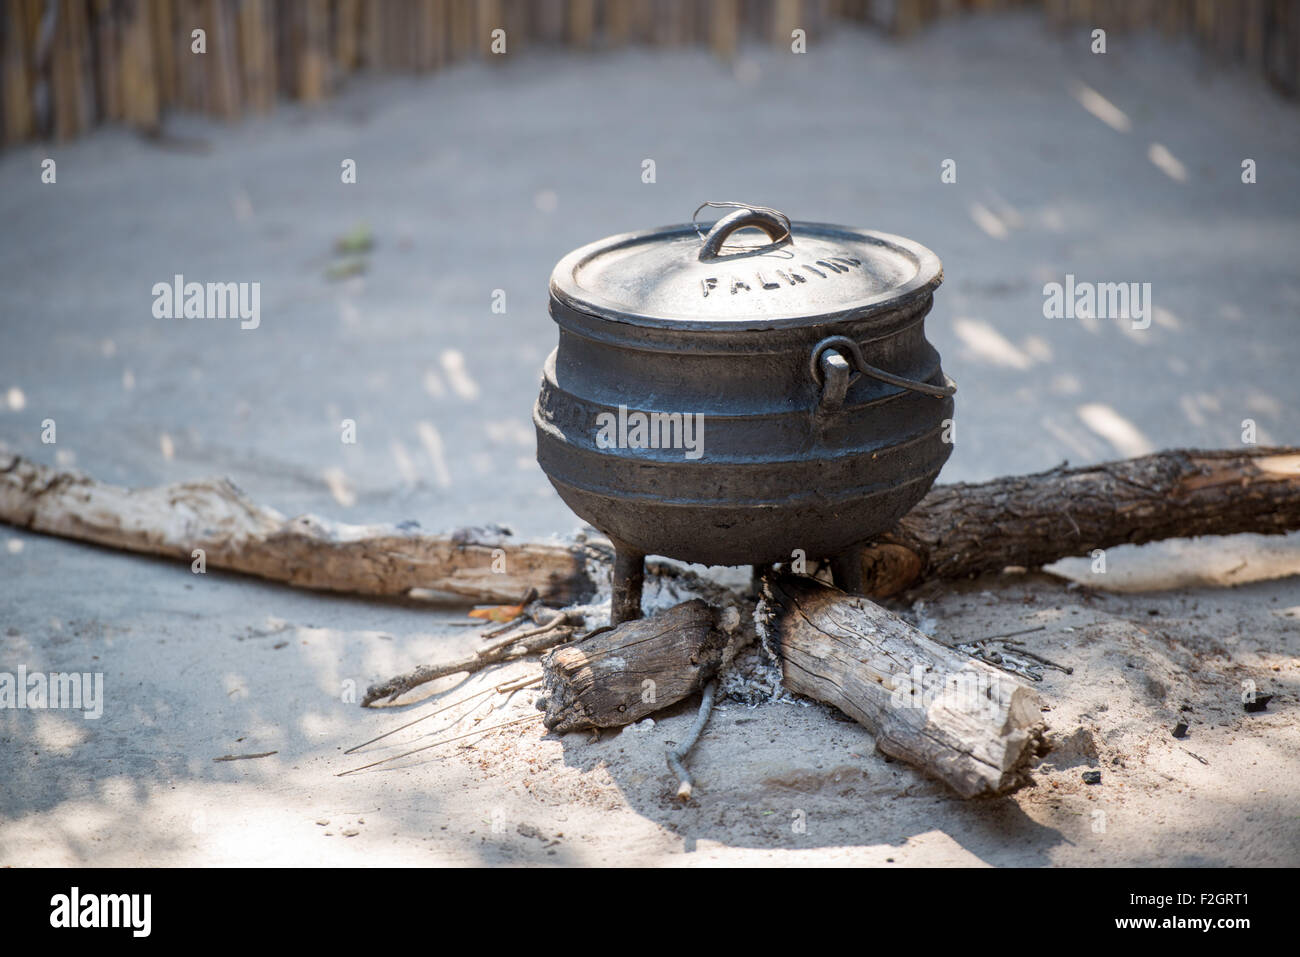 Rendre le sorgho, repas dans Saxaxa Village de Botswana, Afrique Banque D'Images